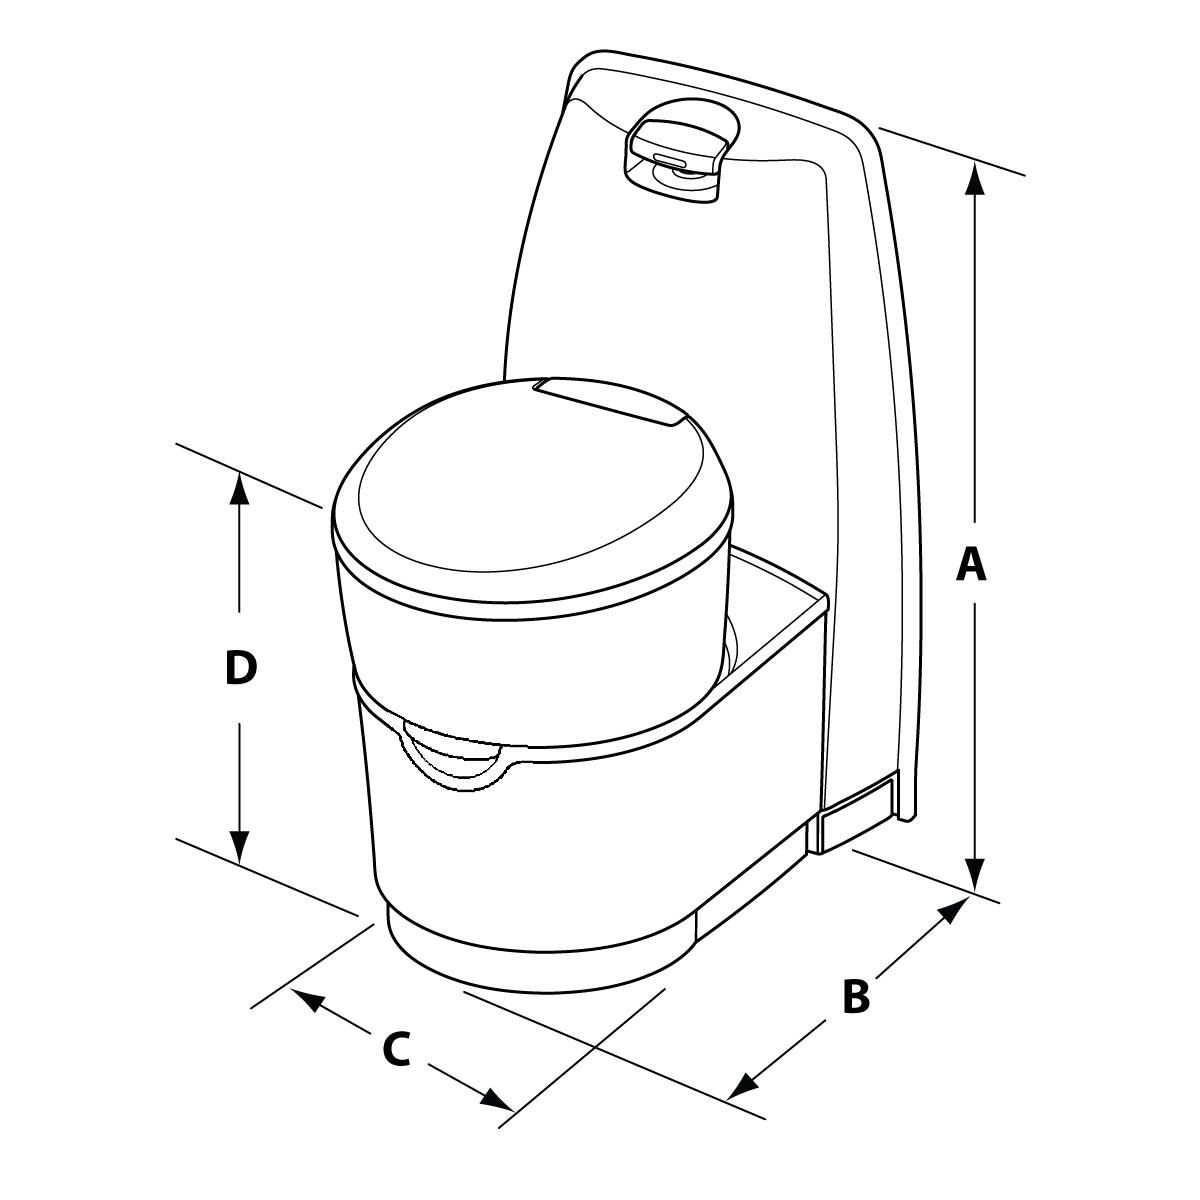 C220 Cassette Toilet  Space-Saving Toilet That Rotates 180 Degrees